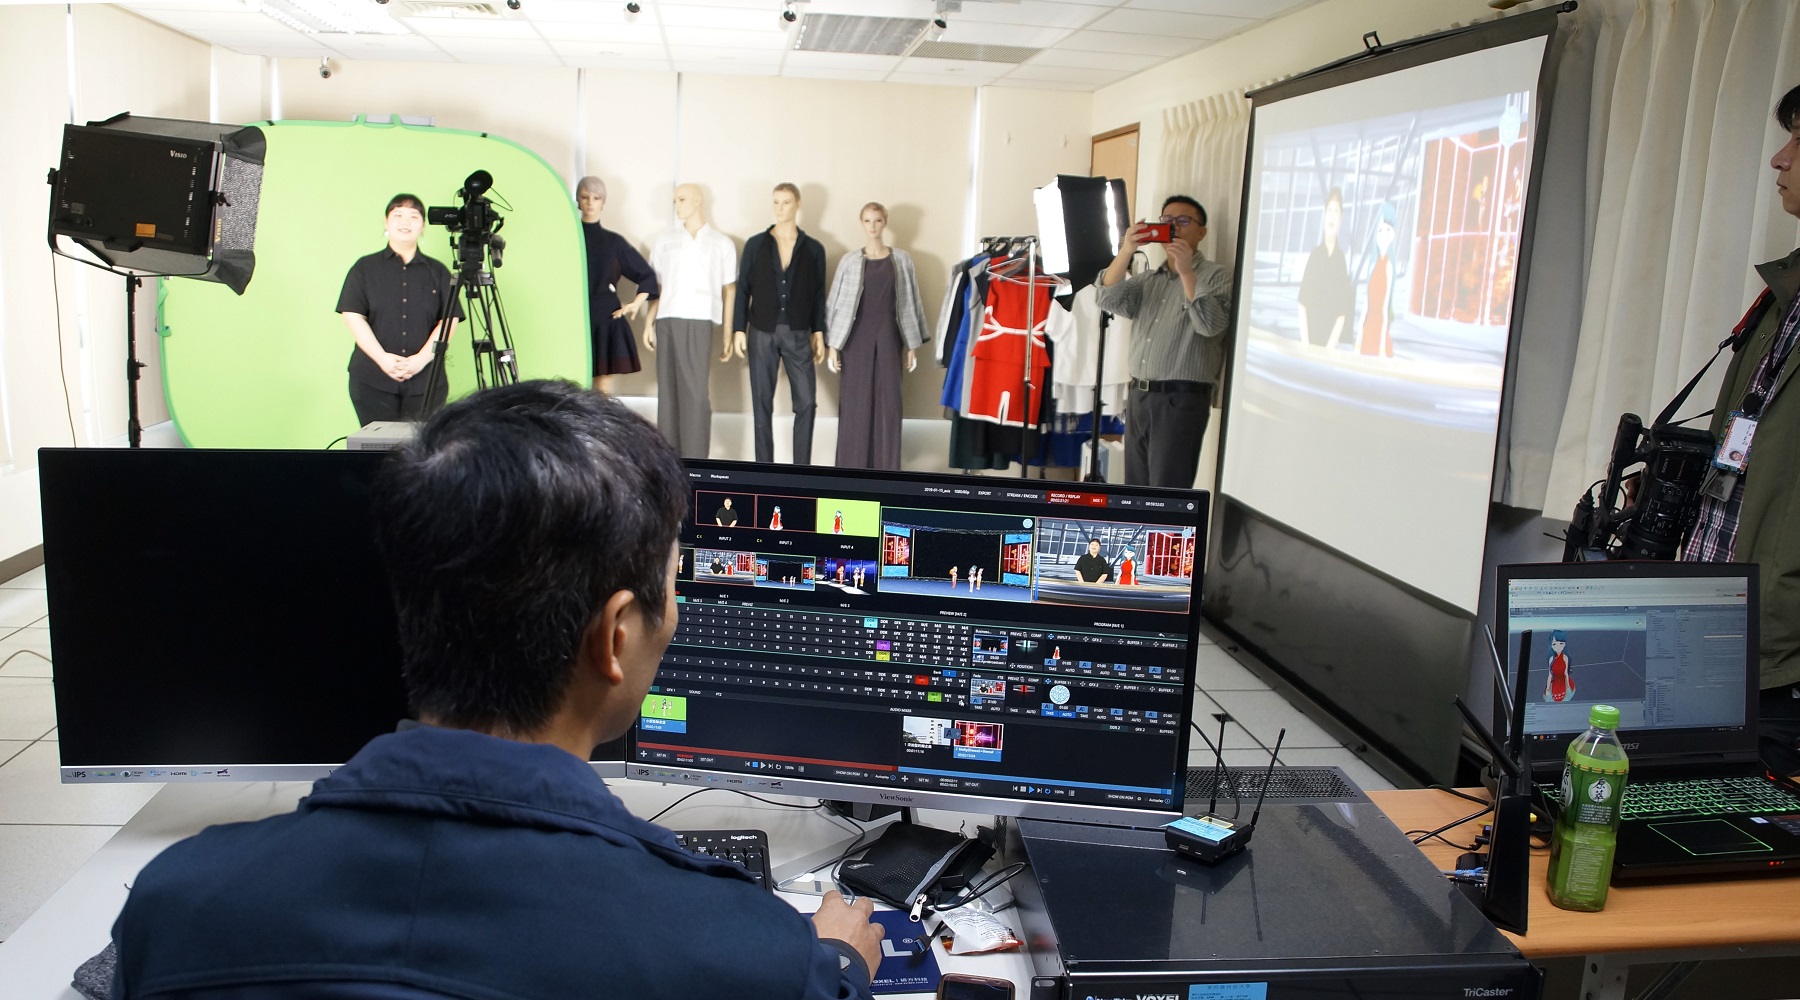 數媒實驗室能承接及輔導校內外數位教材開發與製播企劃。圖為實體主播（左，黑衣者）與虛擬主播（右邊投影螢幕紅衣者）合而為一，搭配虛擬背景，進行新聞播報！